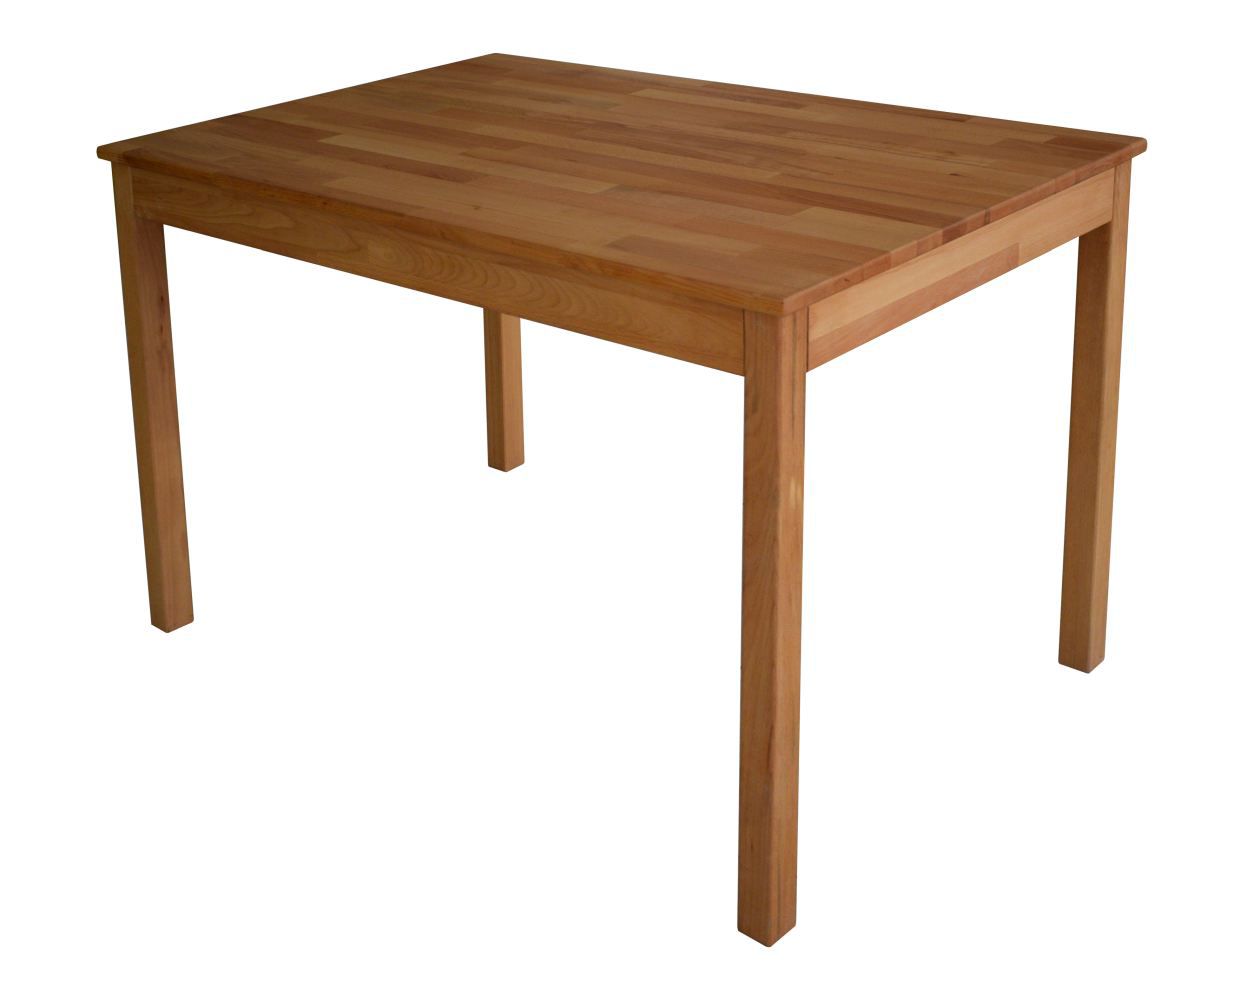 Petite table de salle à manger Wooden Nature 205 hêtre massif huilé naturel - Dimensions : 110 x 70 cm (l x p)